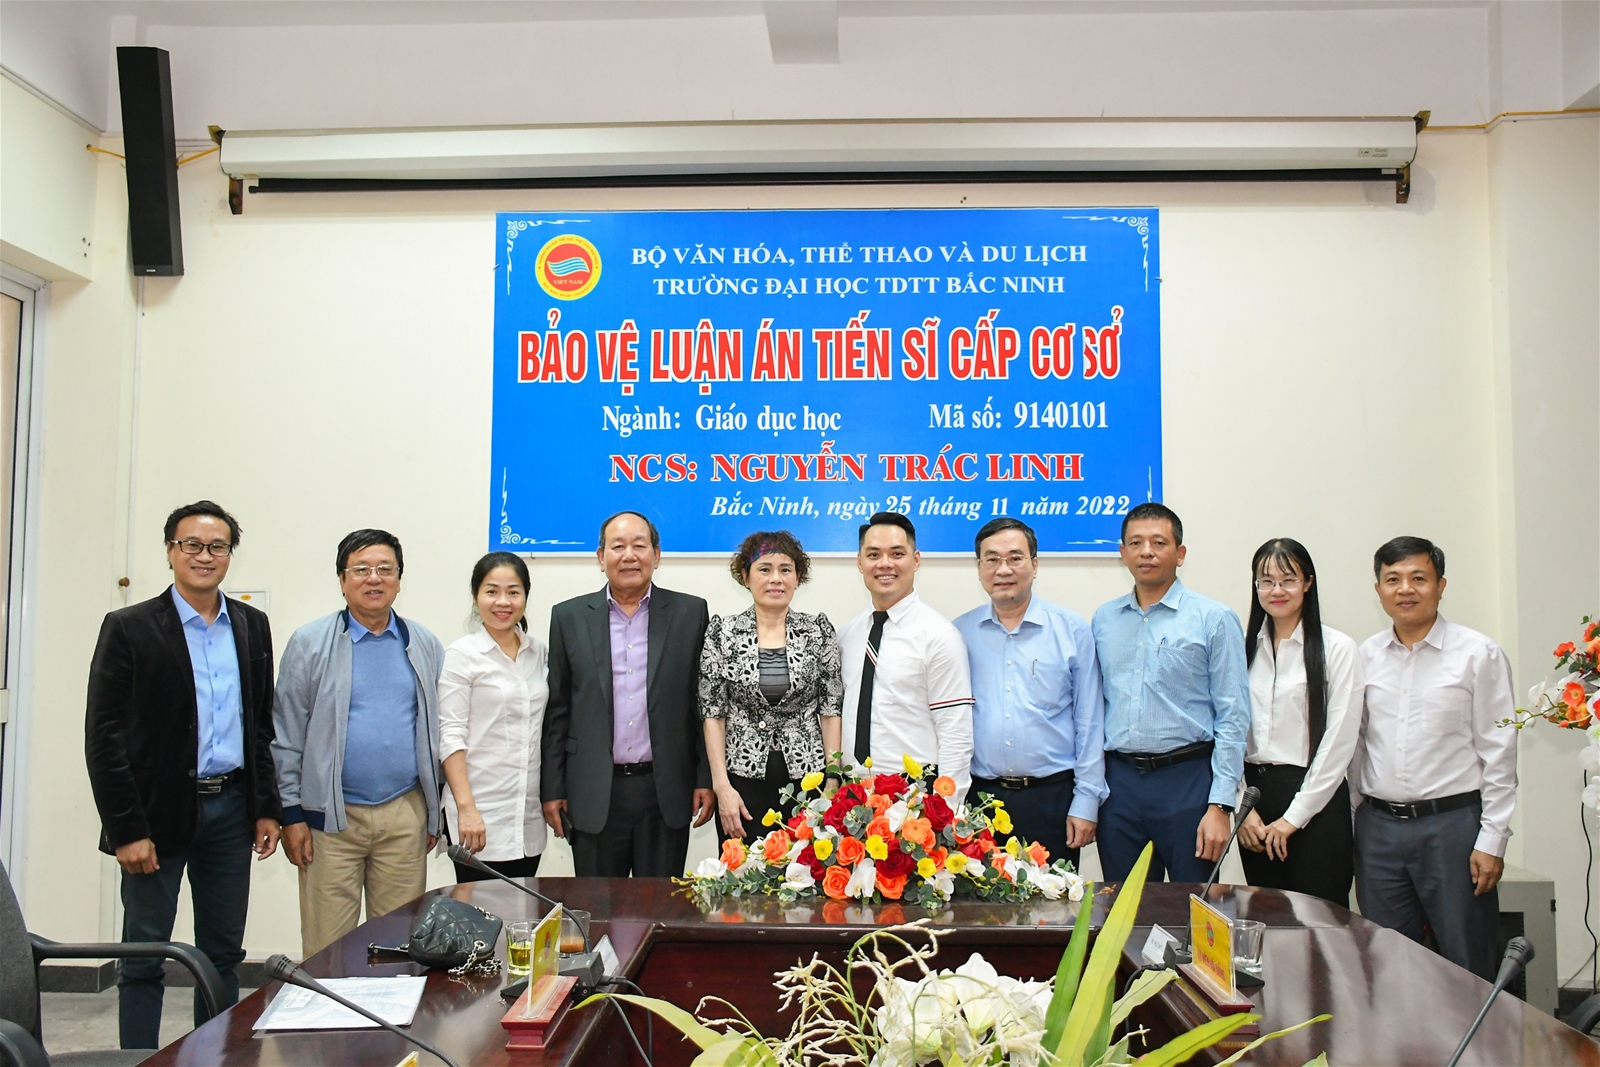 NCS Nguyễn Trác Linh bảo vệ thành công luận án tiến sĩ cấp cơ sở